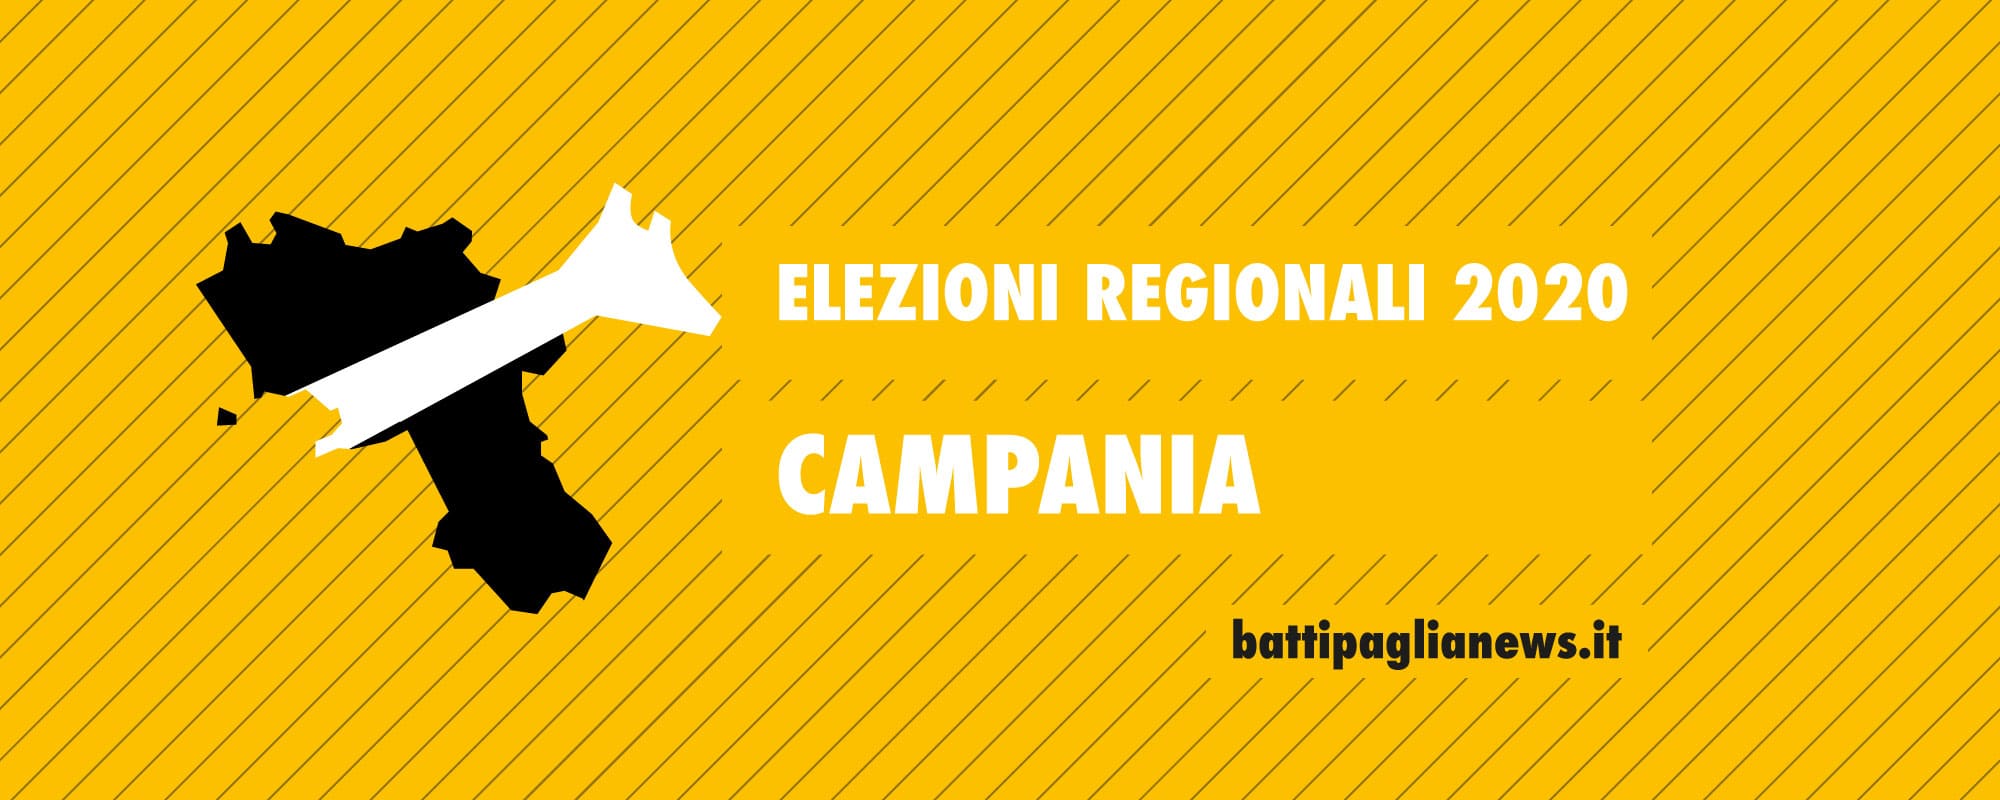 Elezioni Regionali Campania 2020